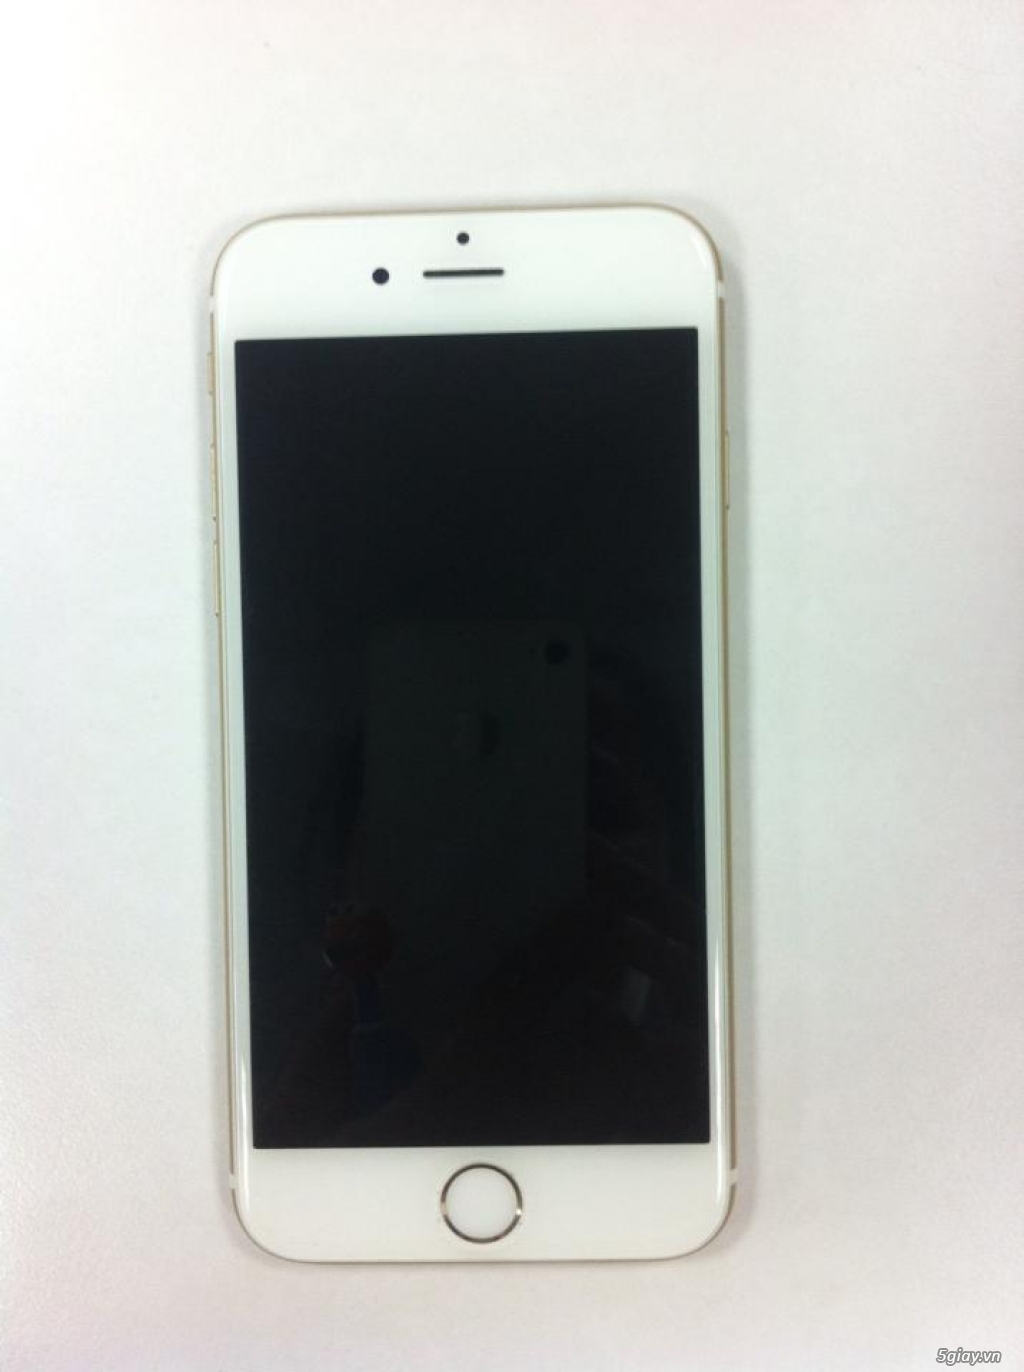 ĐT iPhone 6, 16GB (Vàng) - Lock Nhật - Hàng 99%